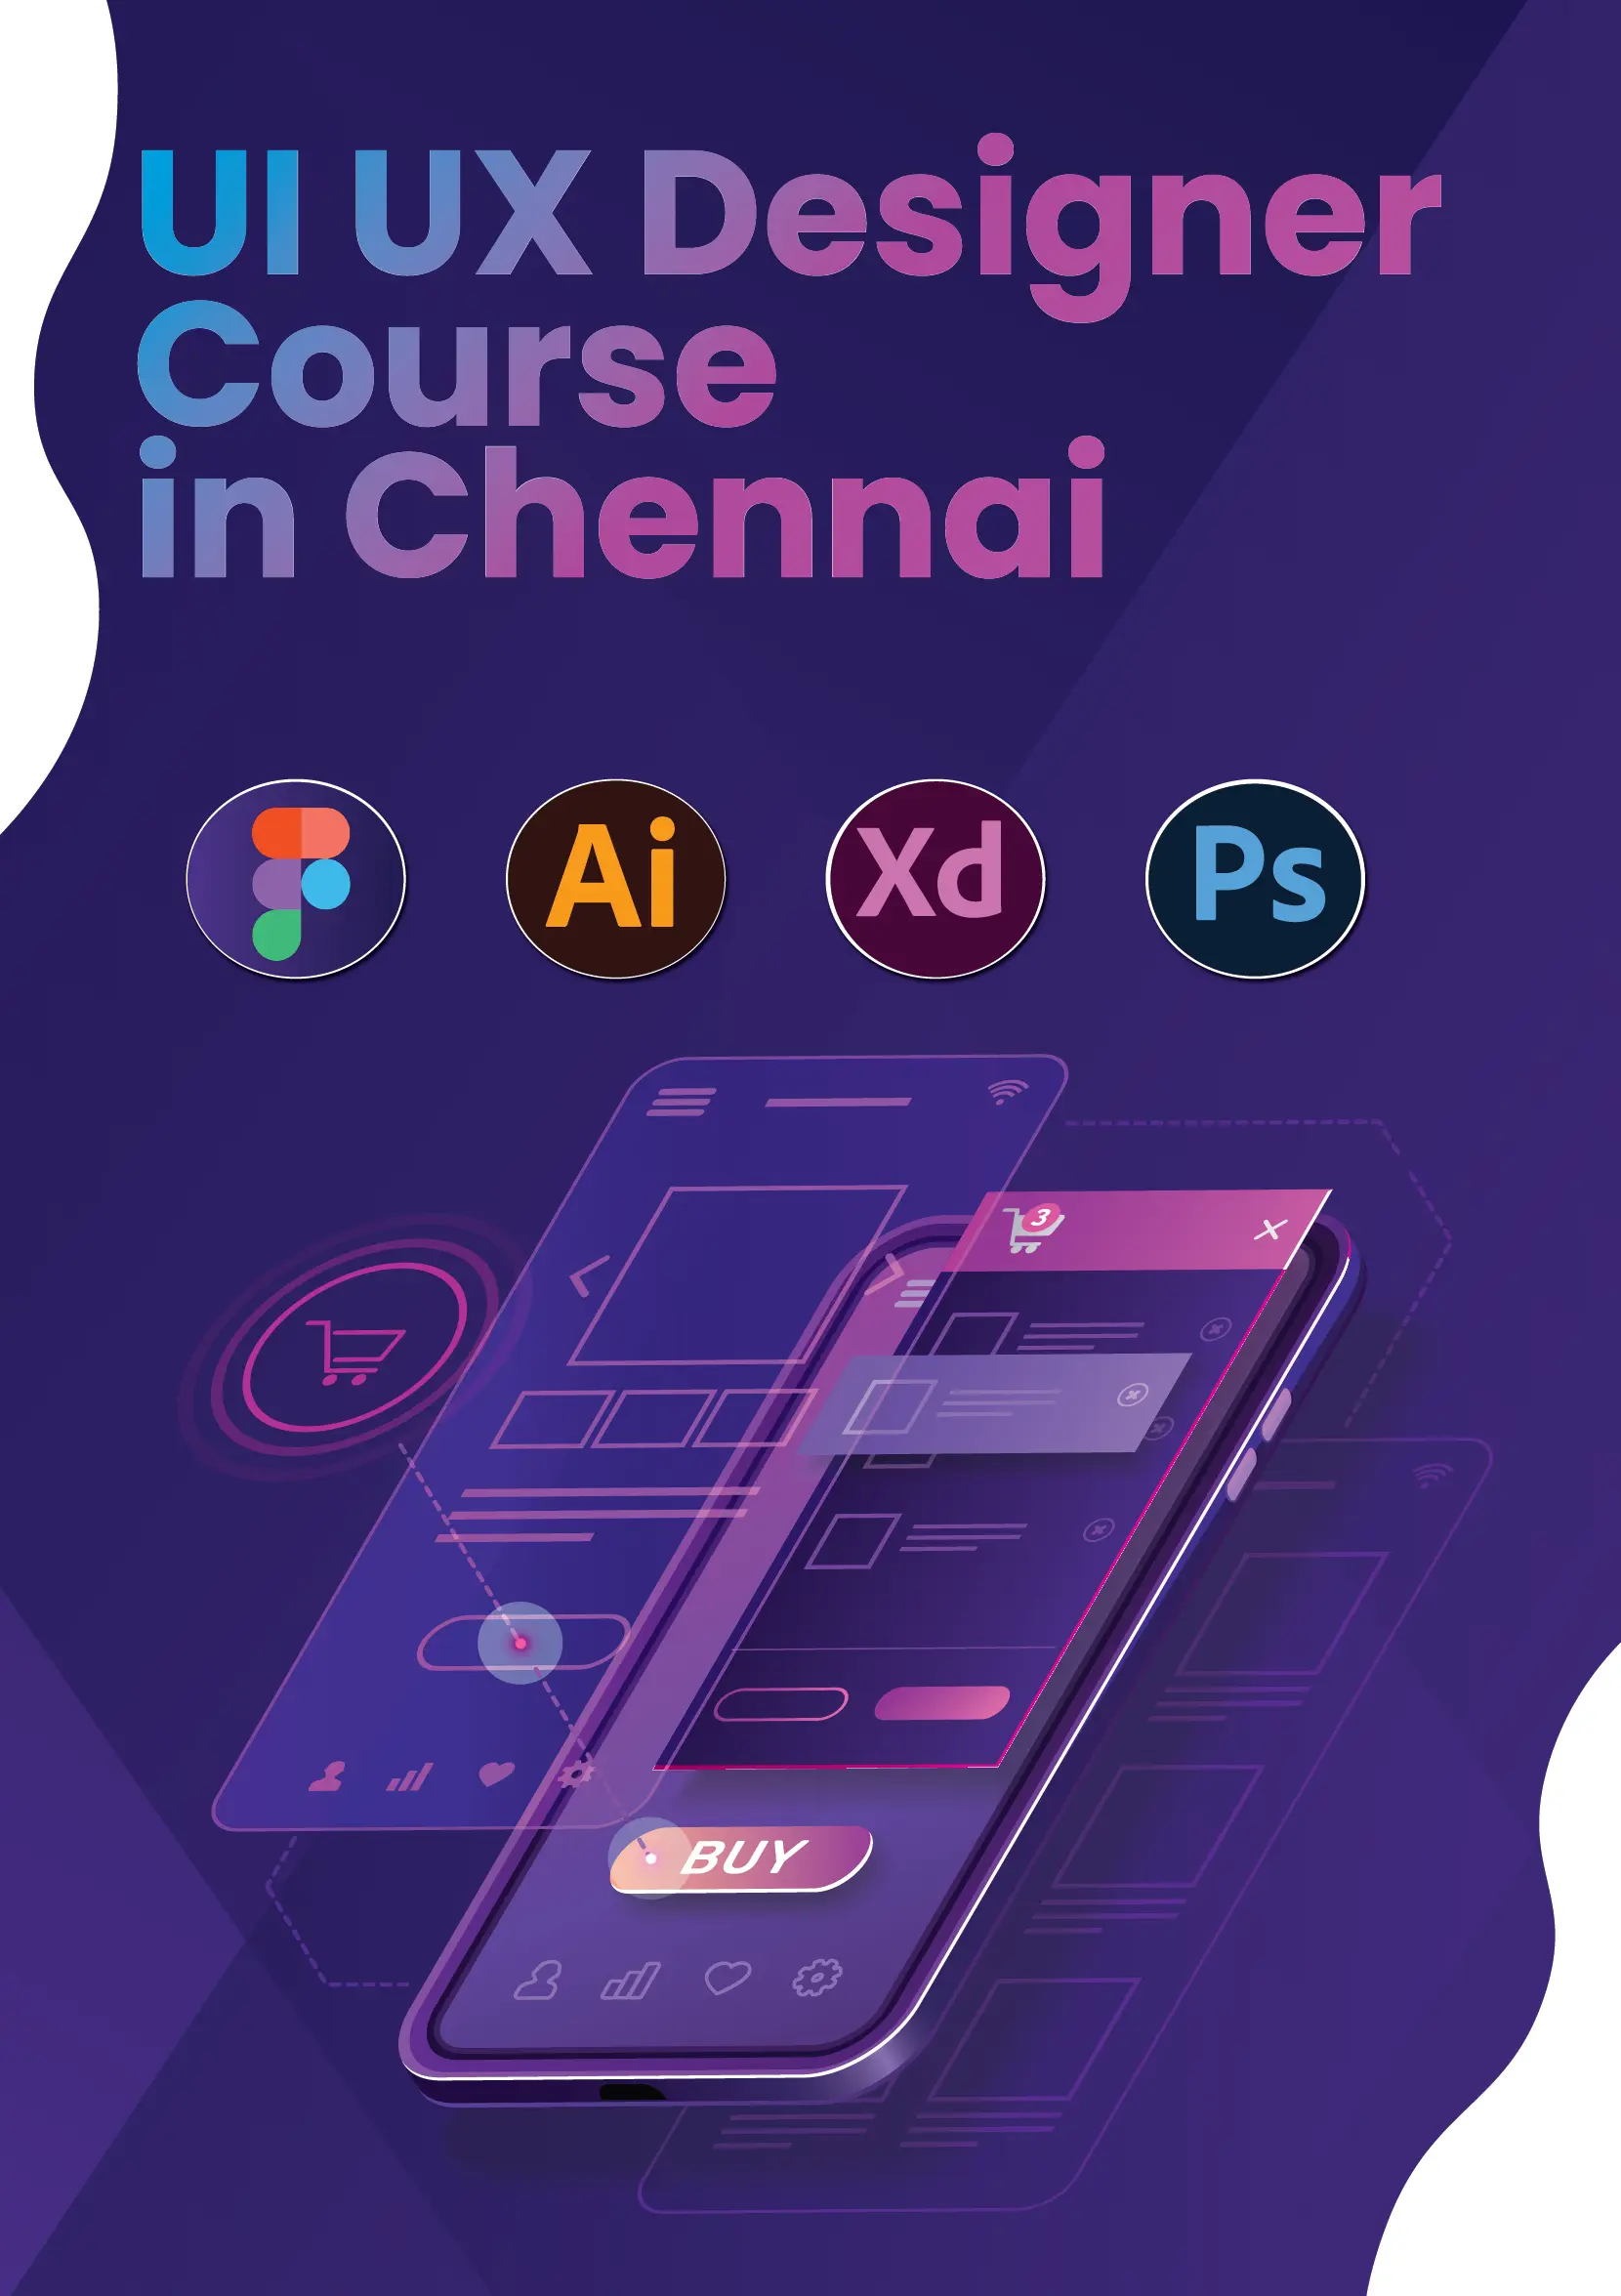 UI UX Designer Course in chennai